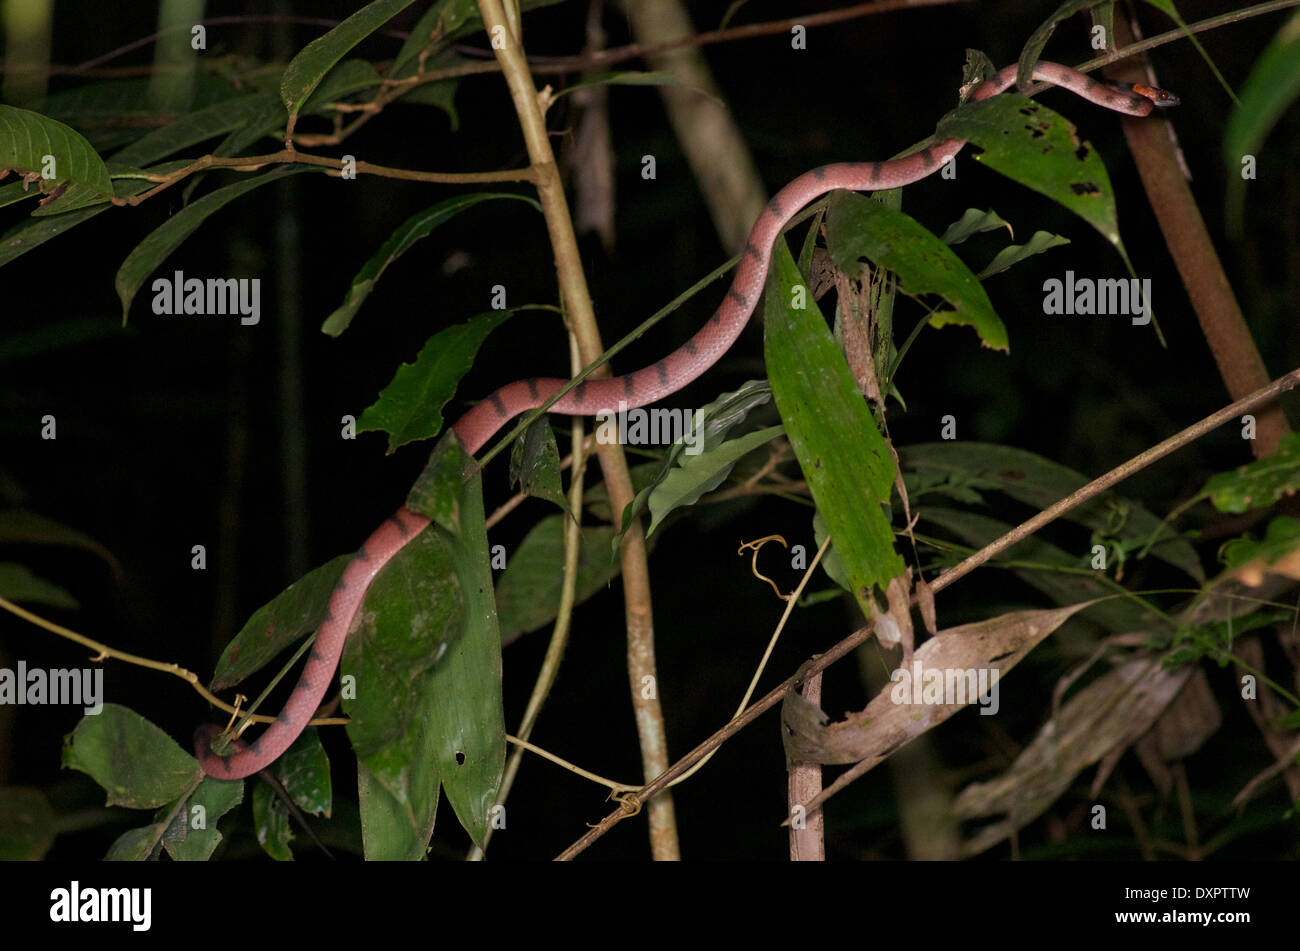 Un serpent de vigne rouge (Siphlophis compressus) allongé dans le feuillage de la forêt tropicale dans la nuit dans le bassin de l'Amazone au Pérou. Banque D'Images